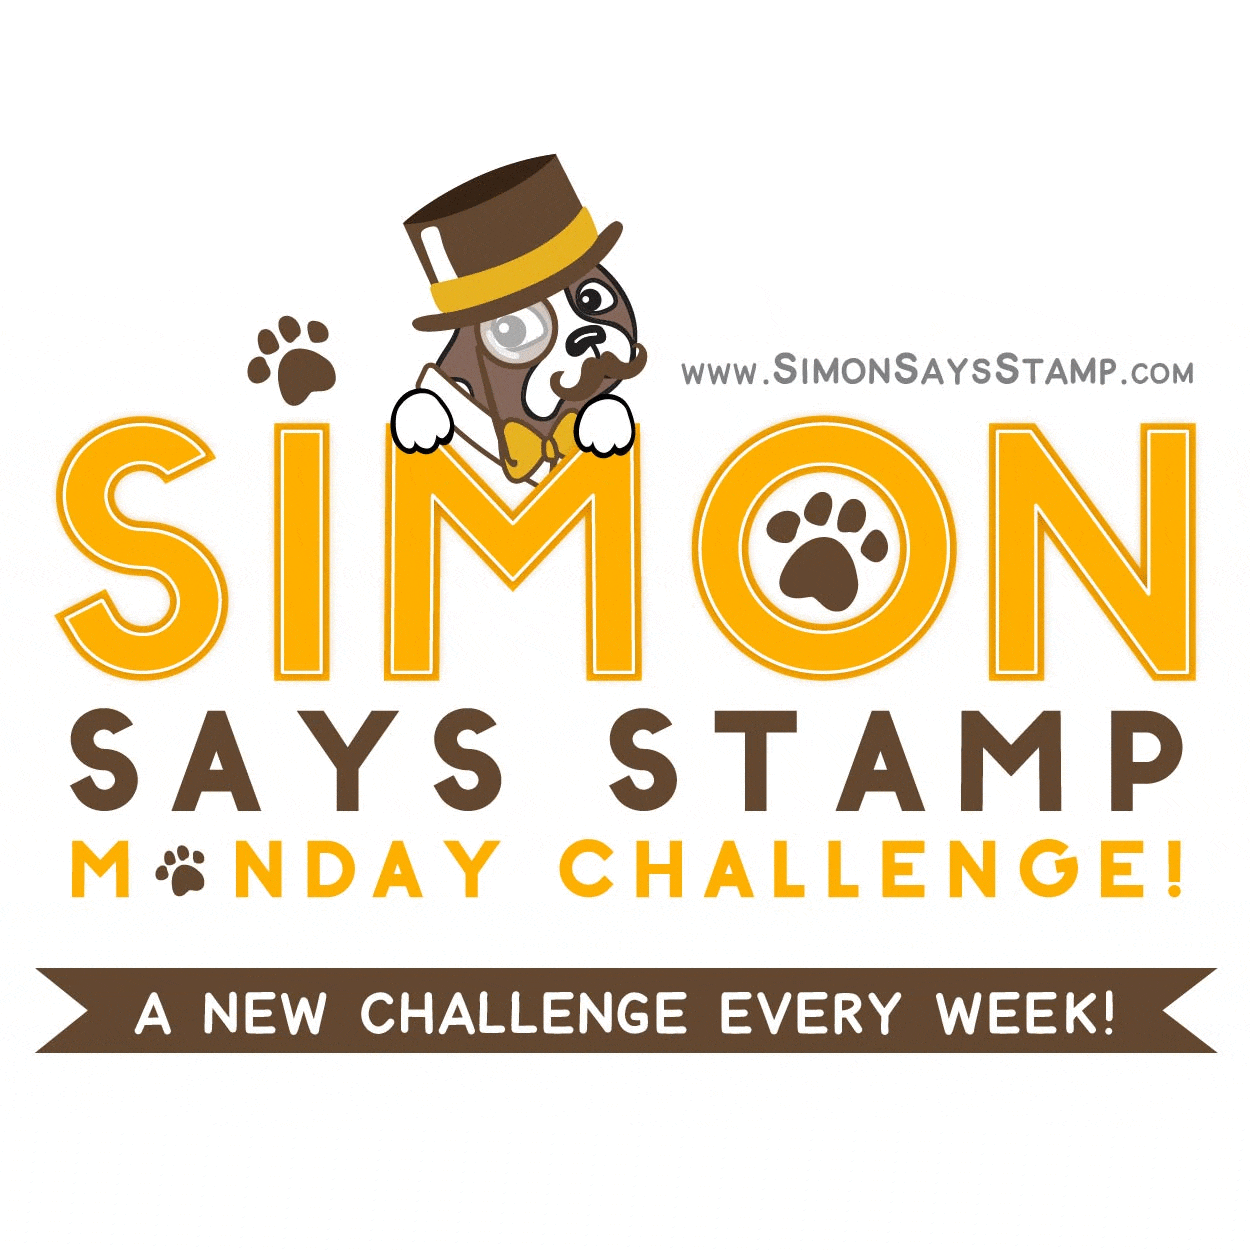 Simon says stamp